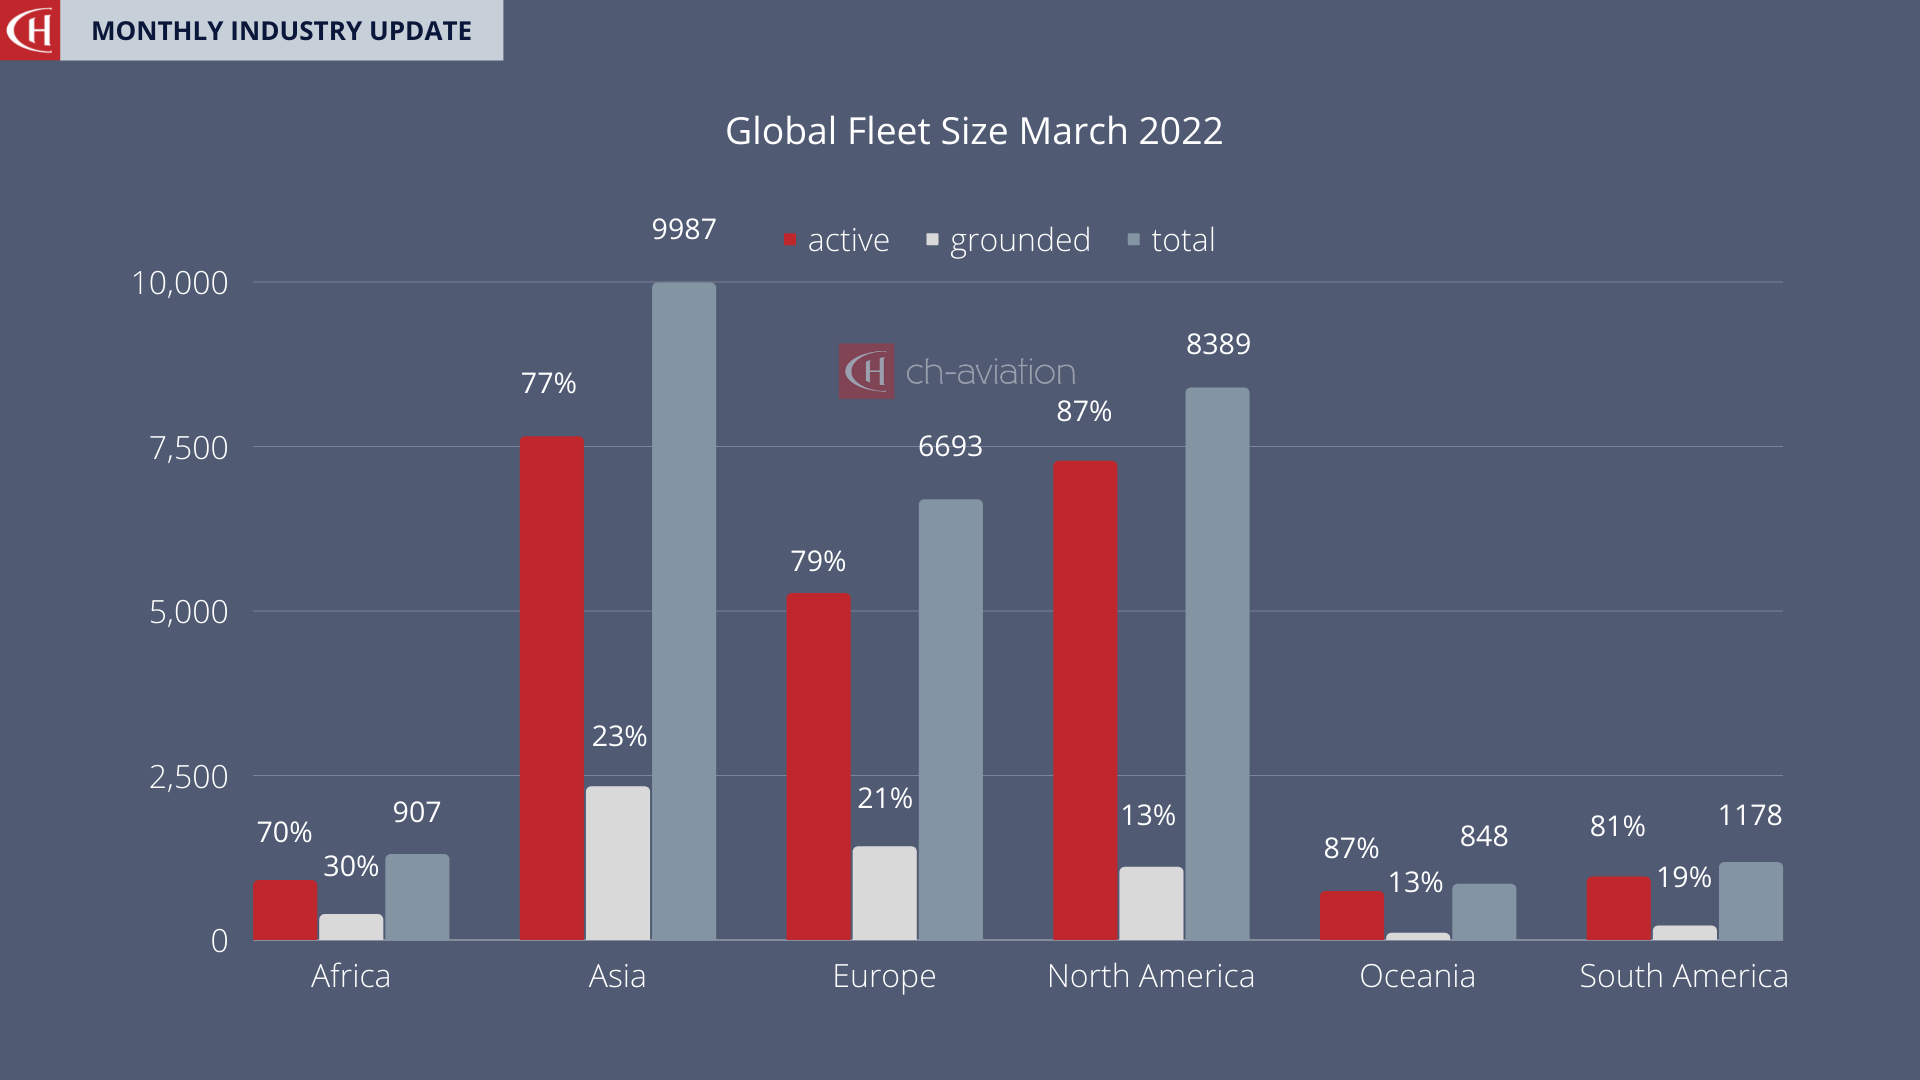 Global Fleet Size March 2022